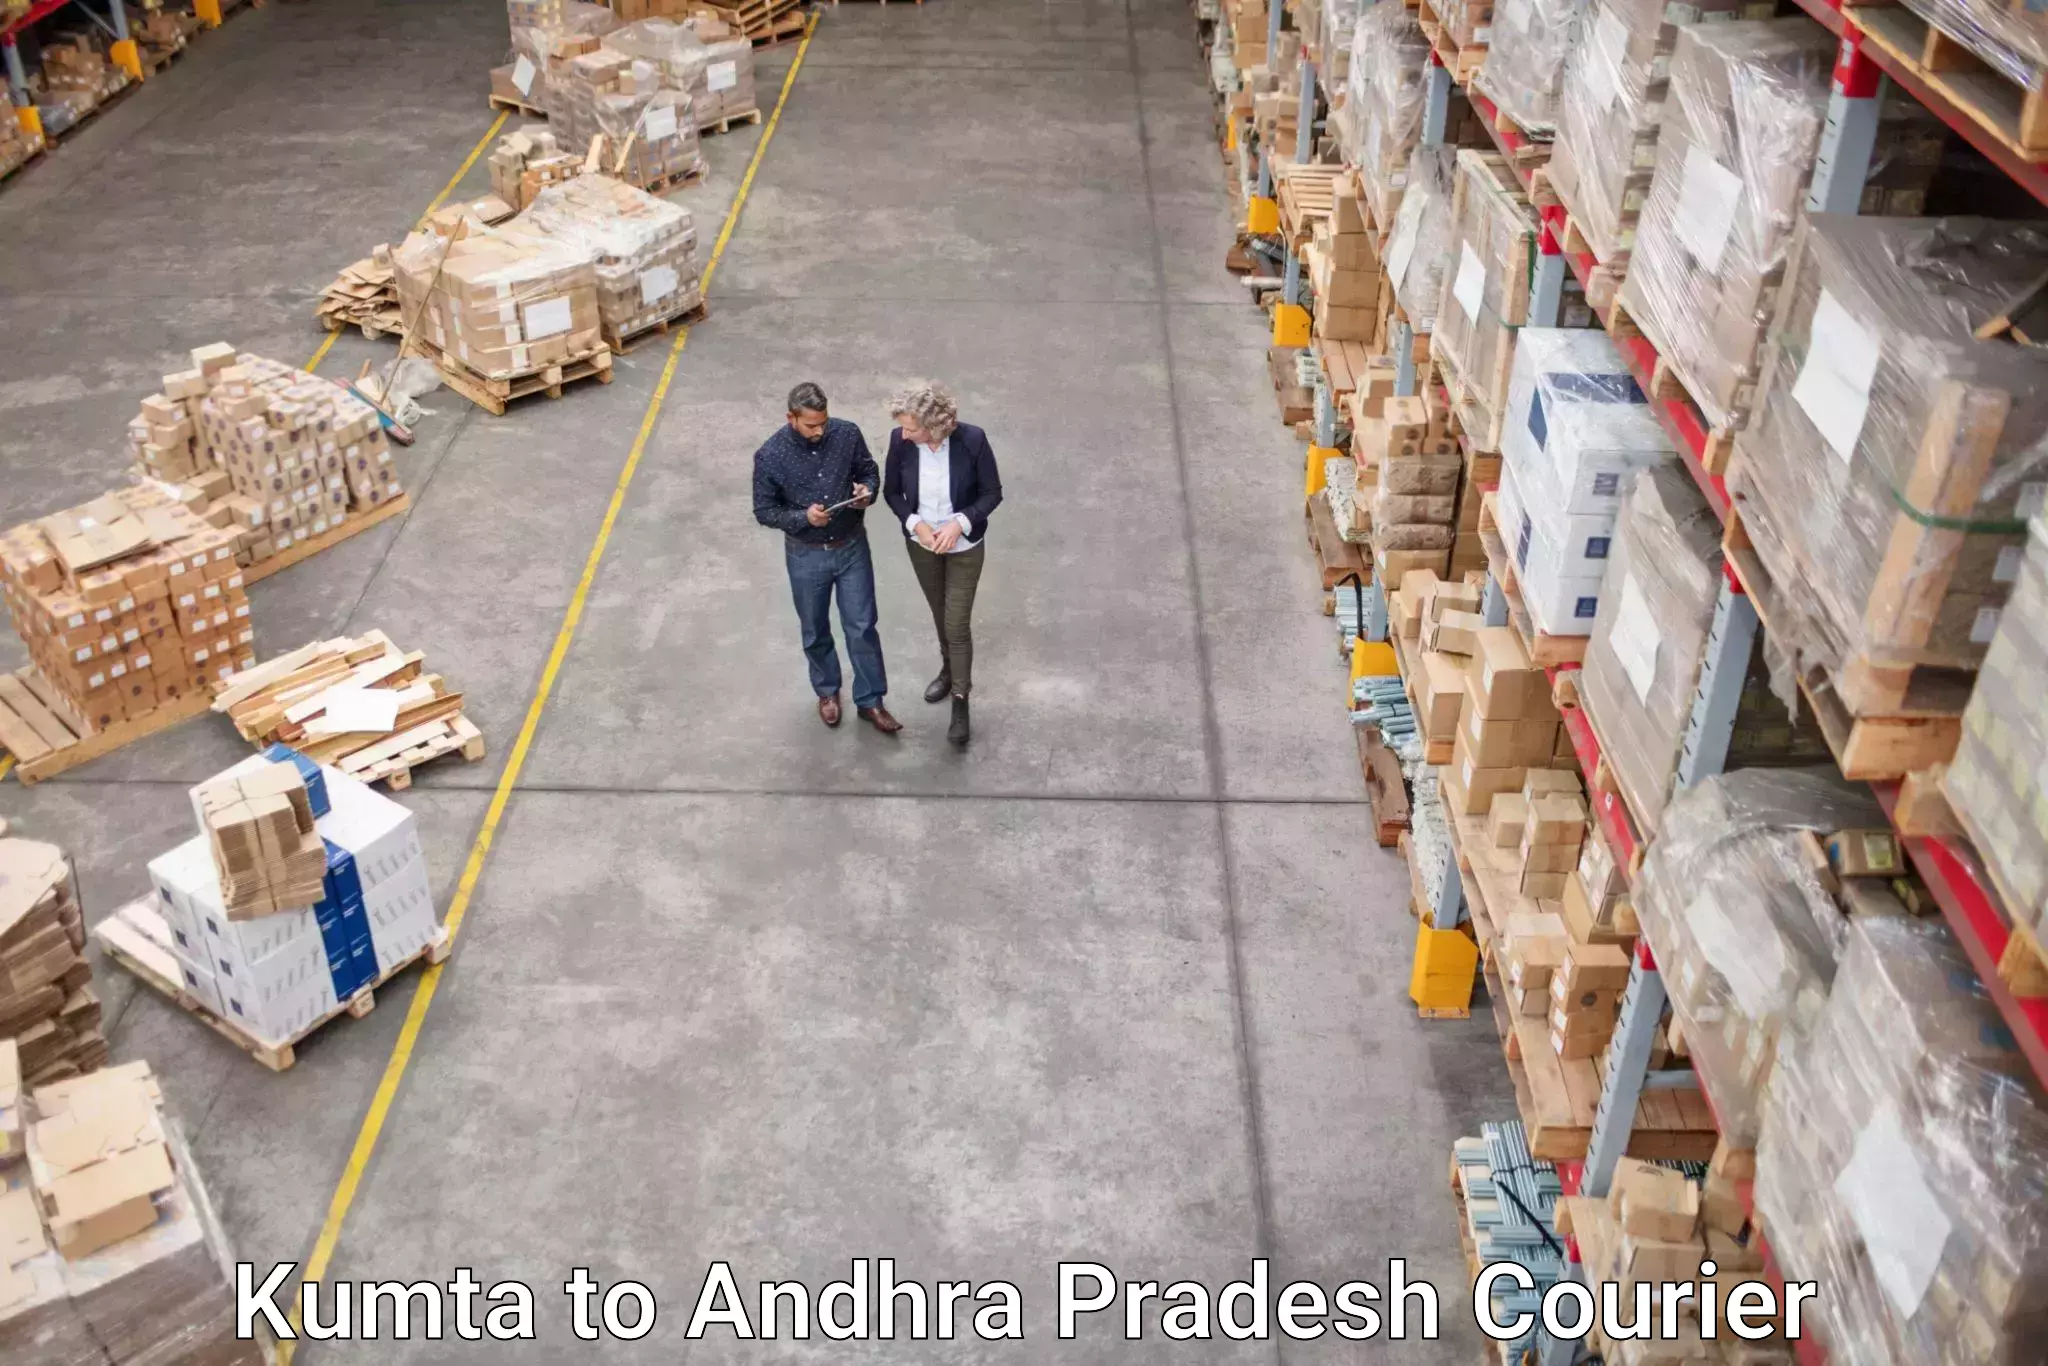 24-hour courier service Kumta to Andhra Pradesh